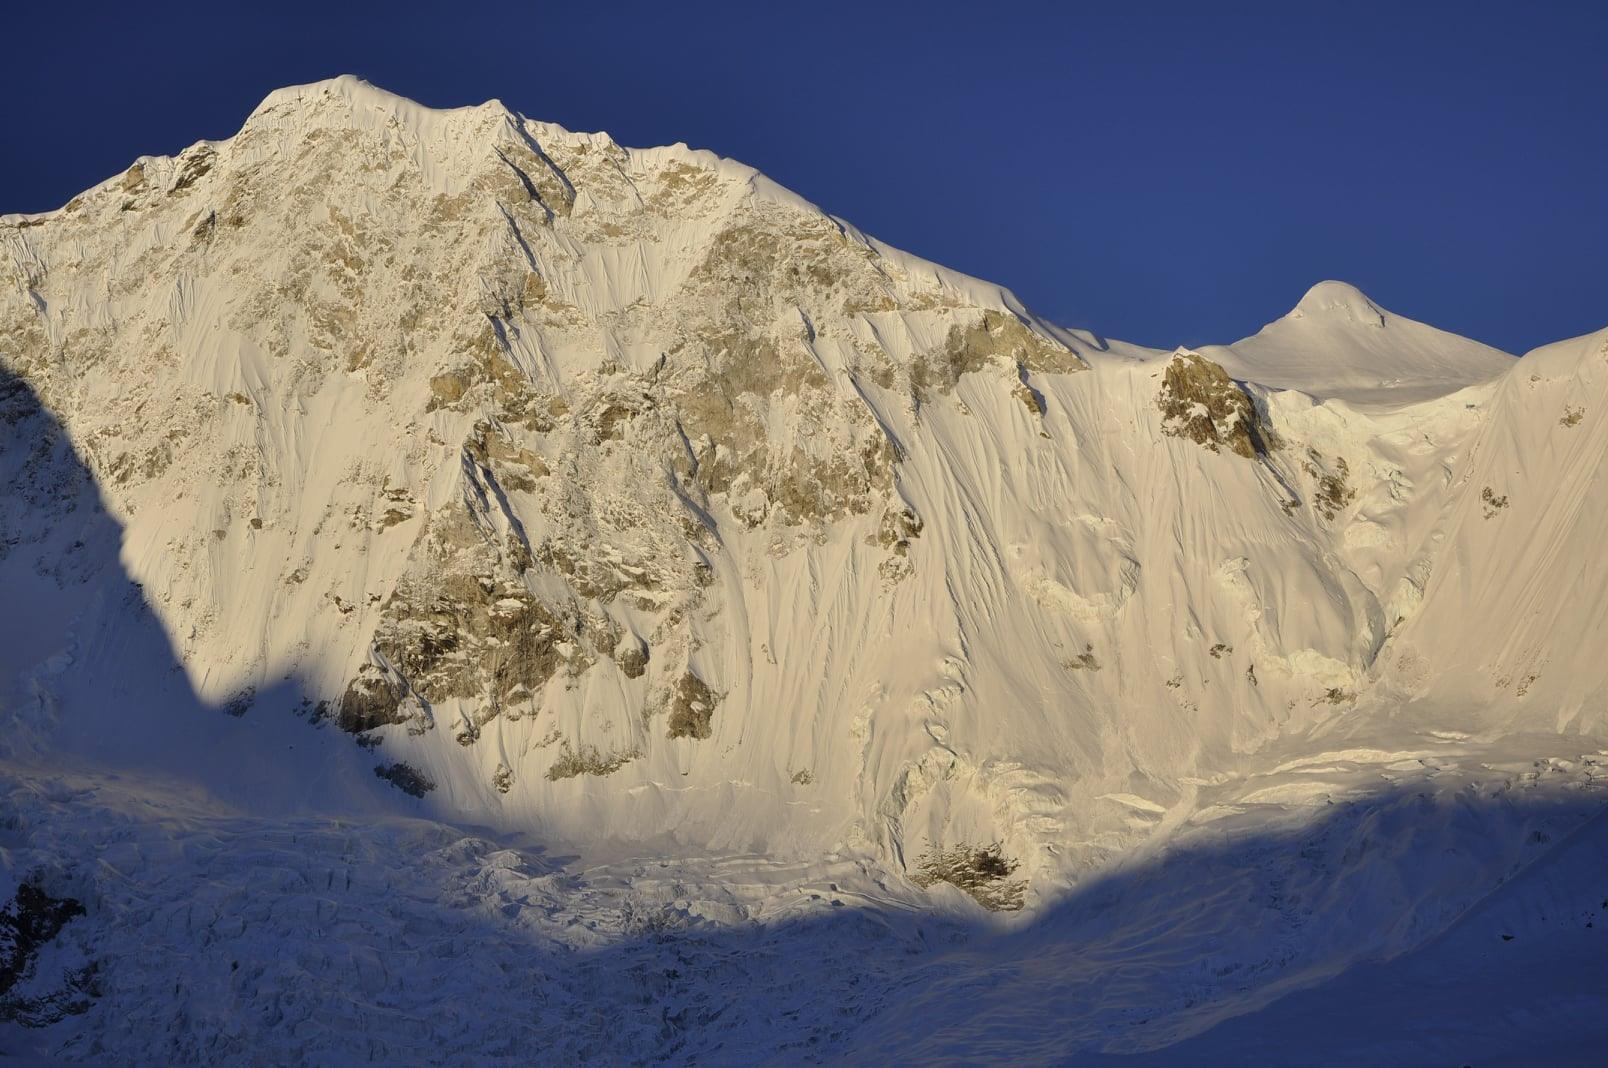 северо-западная стена горы Барунцзе (Baruntse) высотой 7129 метров. Фото Marek Holeček